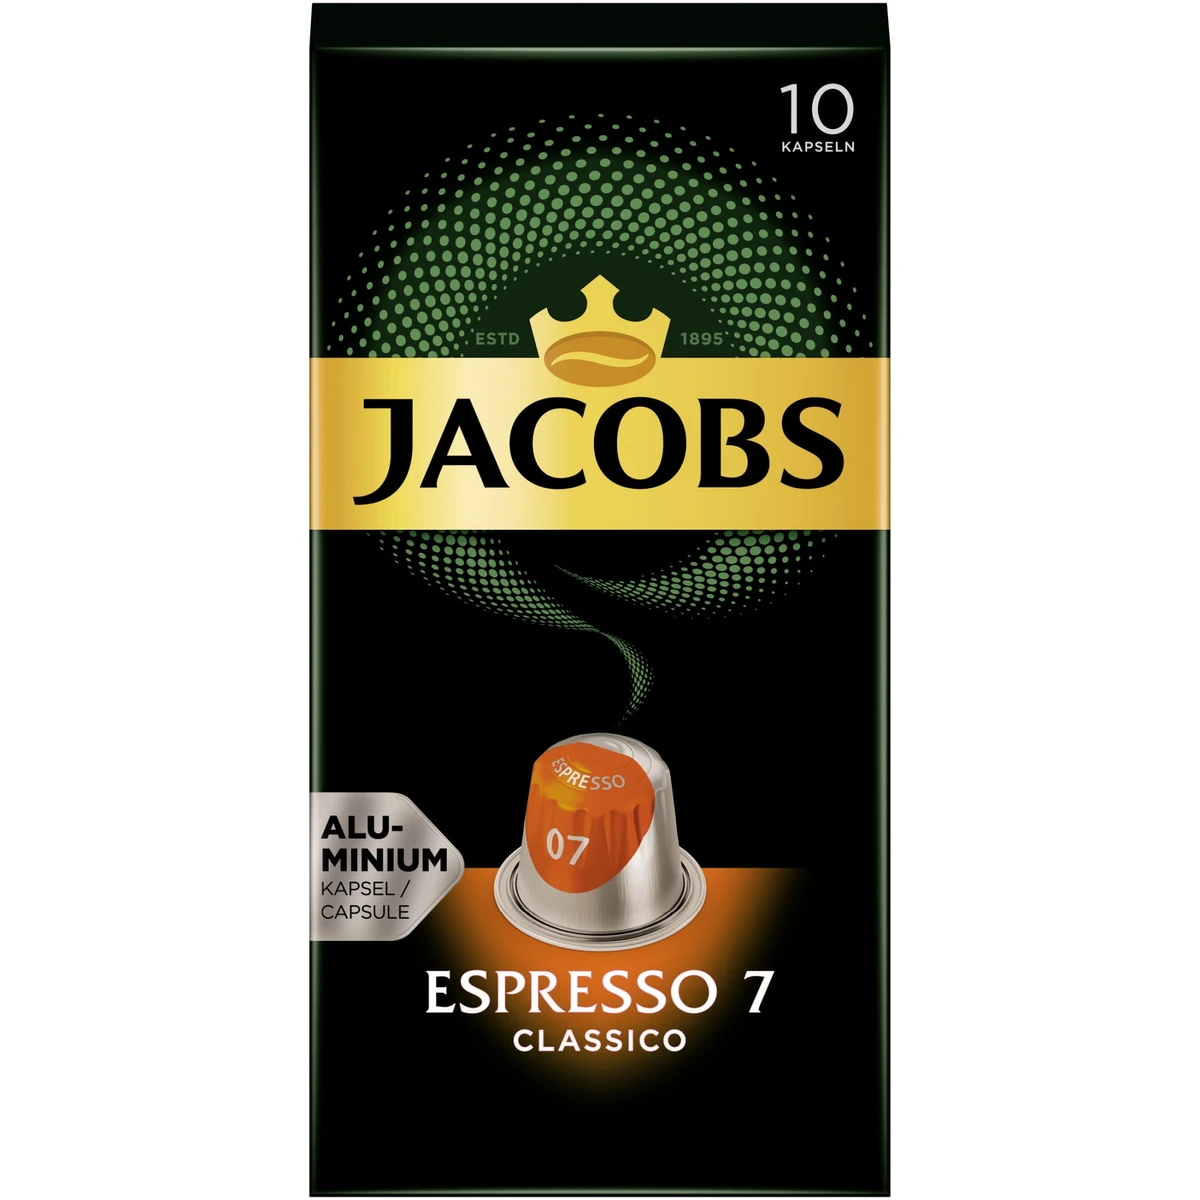 Jacobs Espresso 7 Classico őrölt pörkölt kávé kapszulában 10 db 52 g